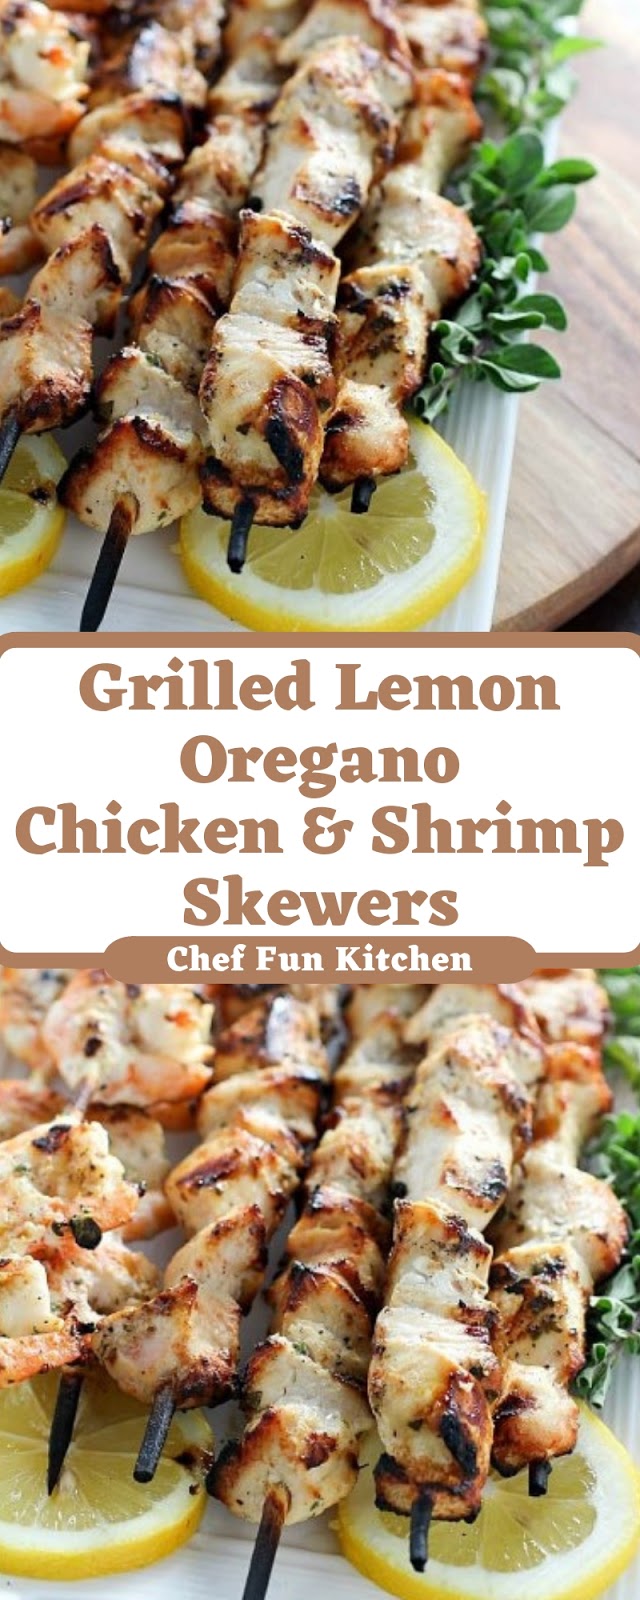 Grilled Lemon Oregano Chicken & Shrimp Skewers